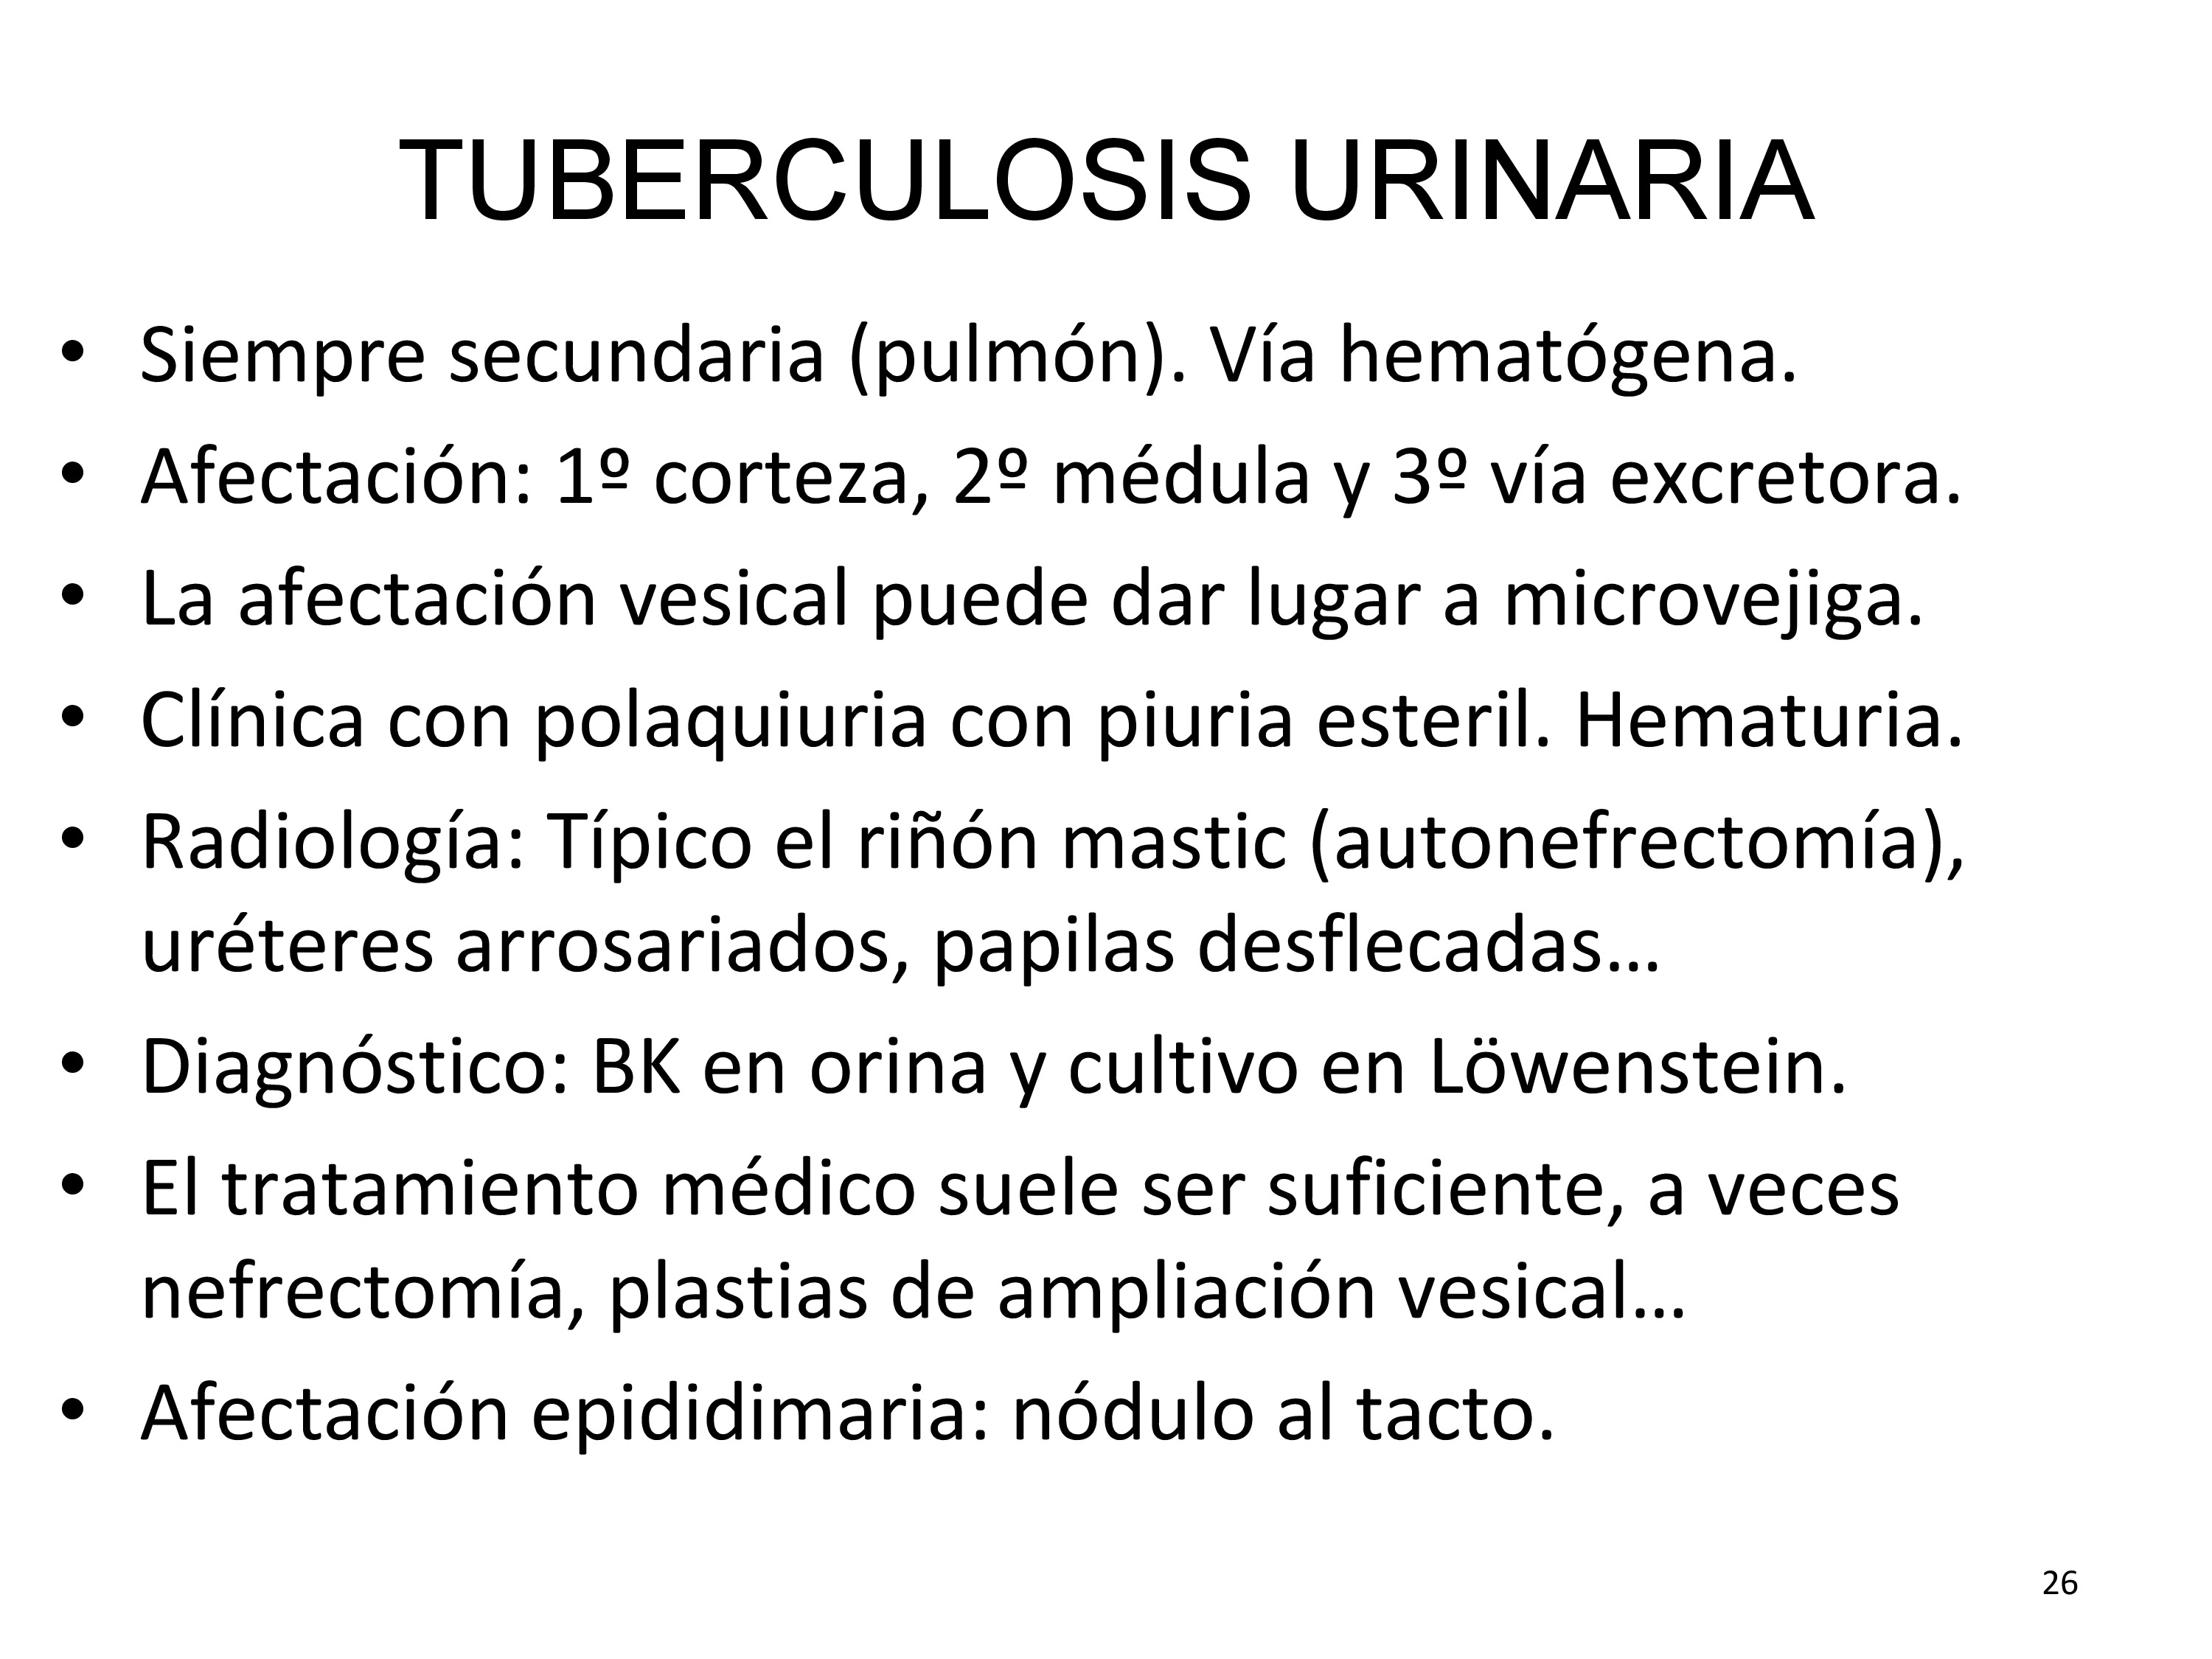 La anatomía patológica muestra en riñón úlceras, necrosis papilar, calcificaciones, estenosis de los cálices, de la unión pielo ureteral o de la unión urétero vesical, esclerosis del detrusor.